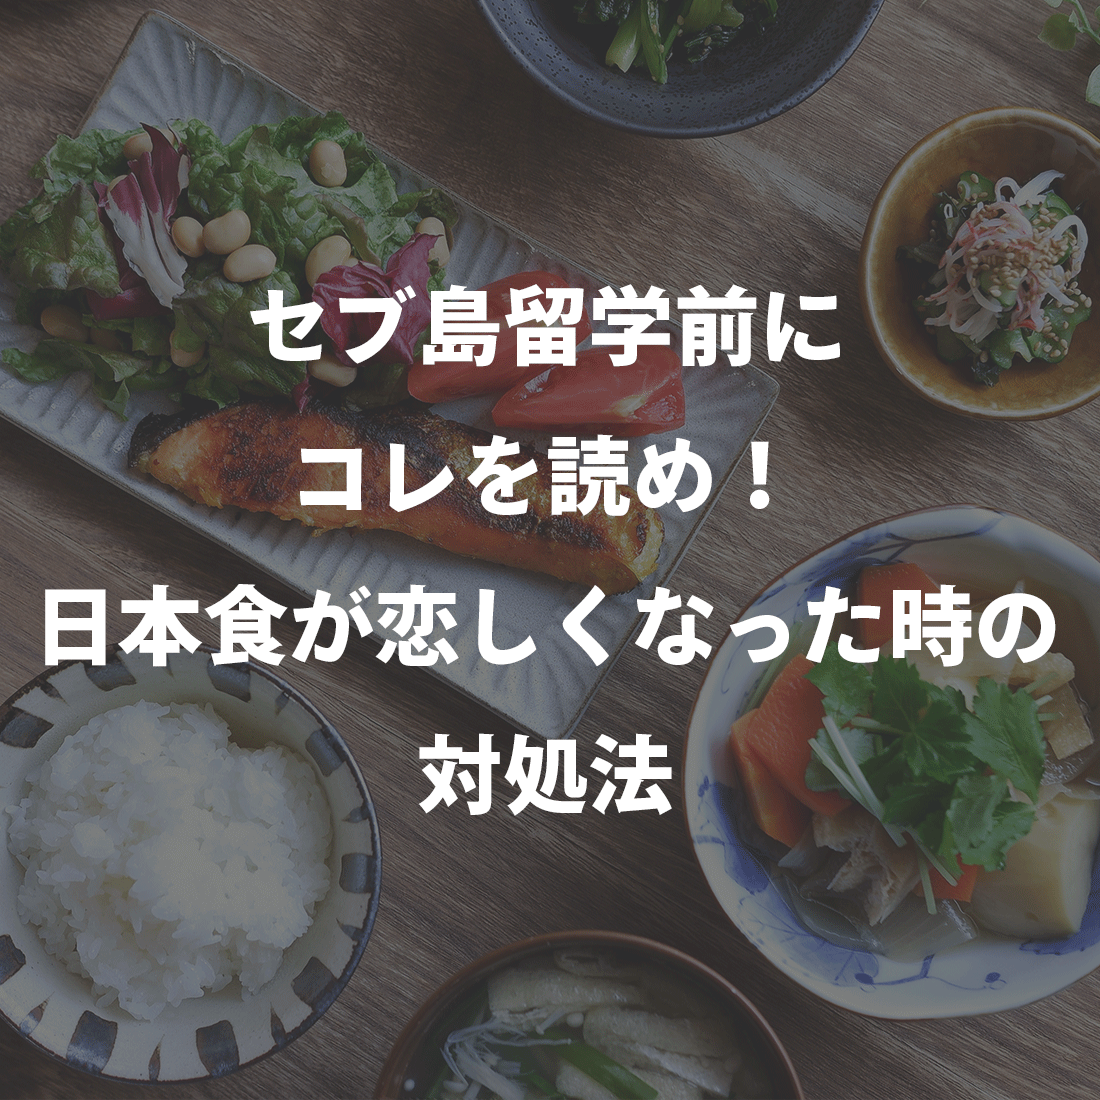 留学前にコレを読め！日本食が恋しくなった時の対処法